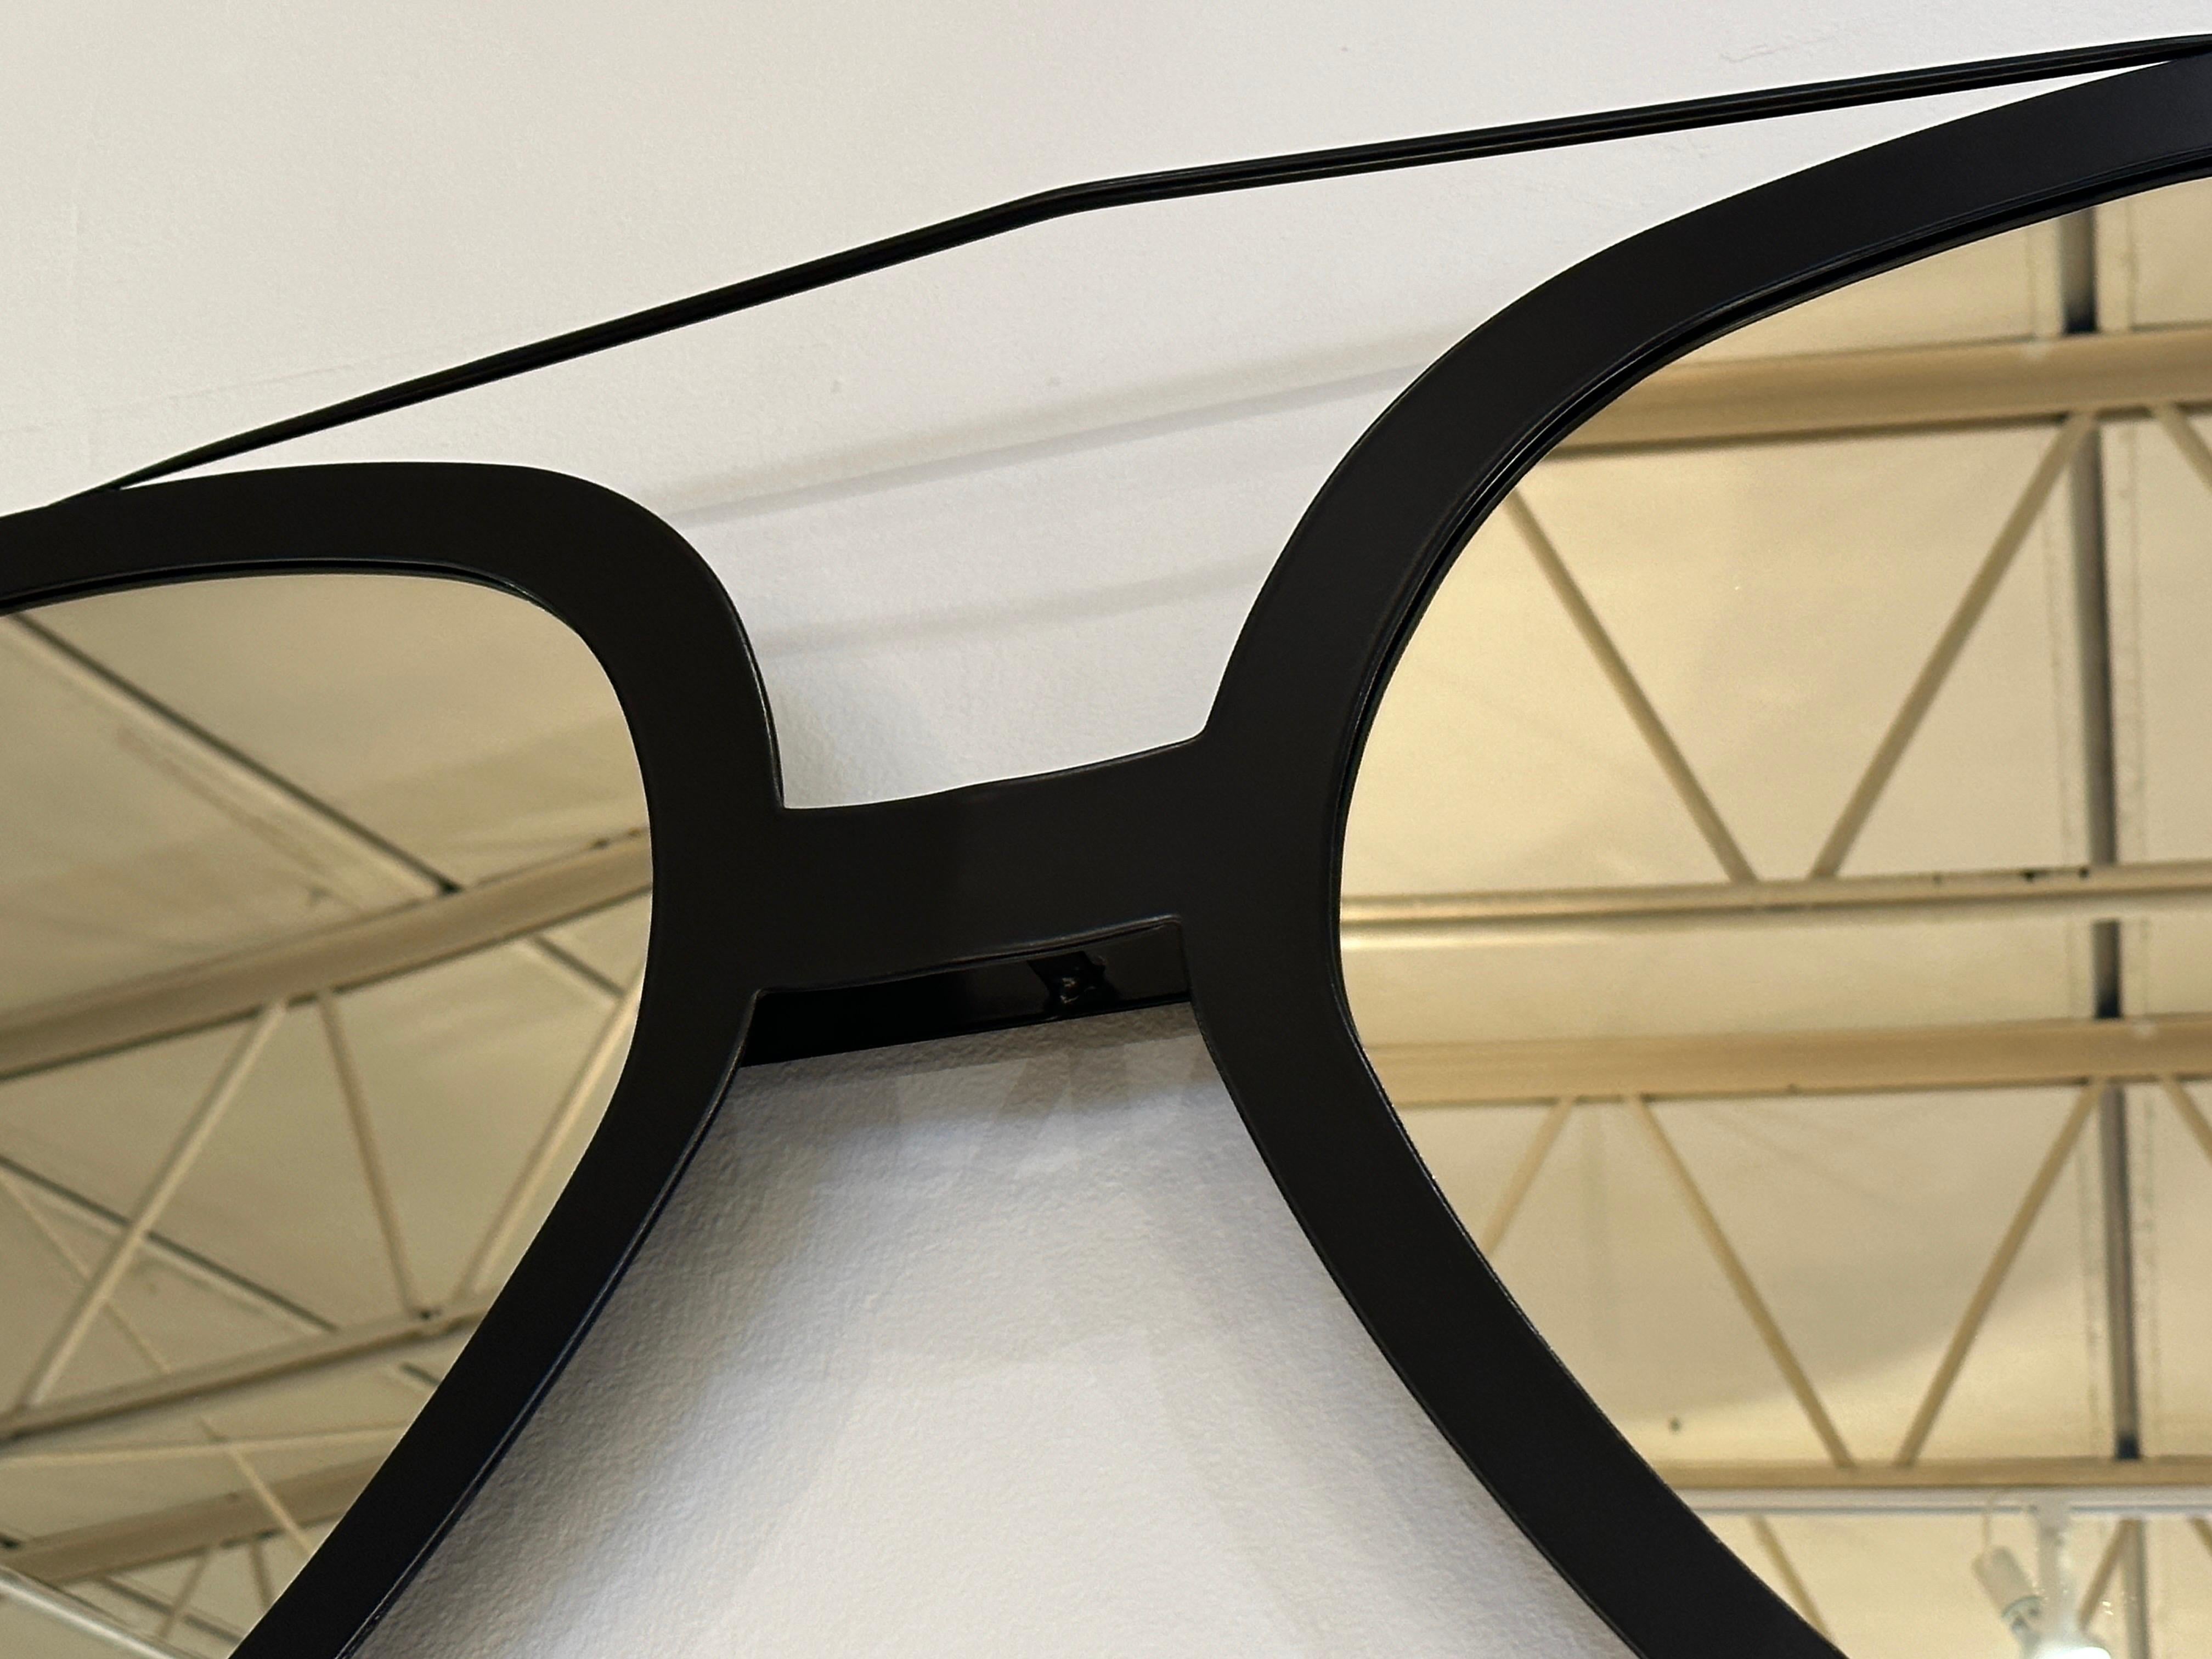 Ce miroir de lunettes de soleil Aviator surdimensionné, au revêtement en poudre noir mat, est d'une qualité artisanale exquise et constitue un choix de décoration très fantaisiste pour n'importe quel espace. Nouvellement recouvert d'une couche de